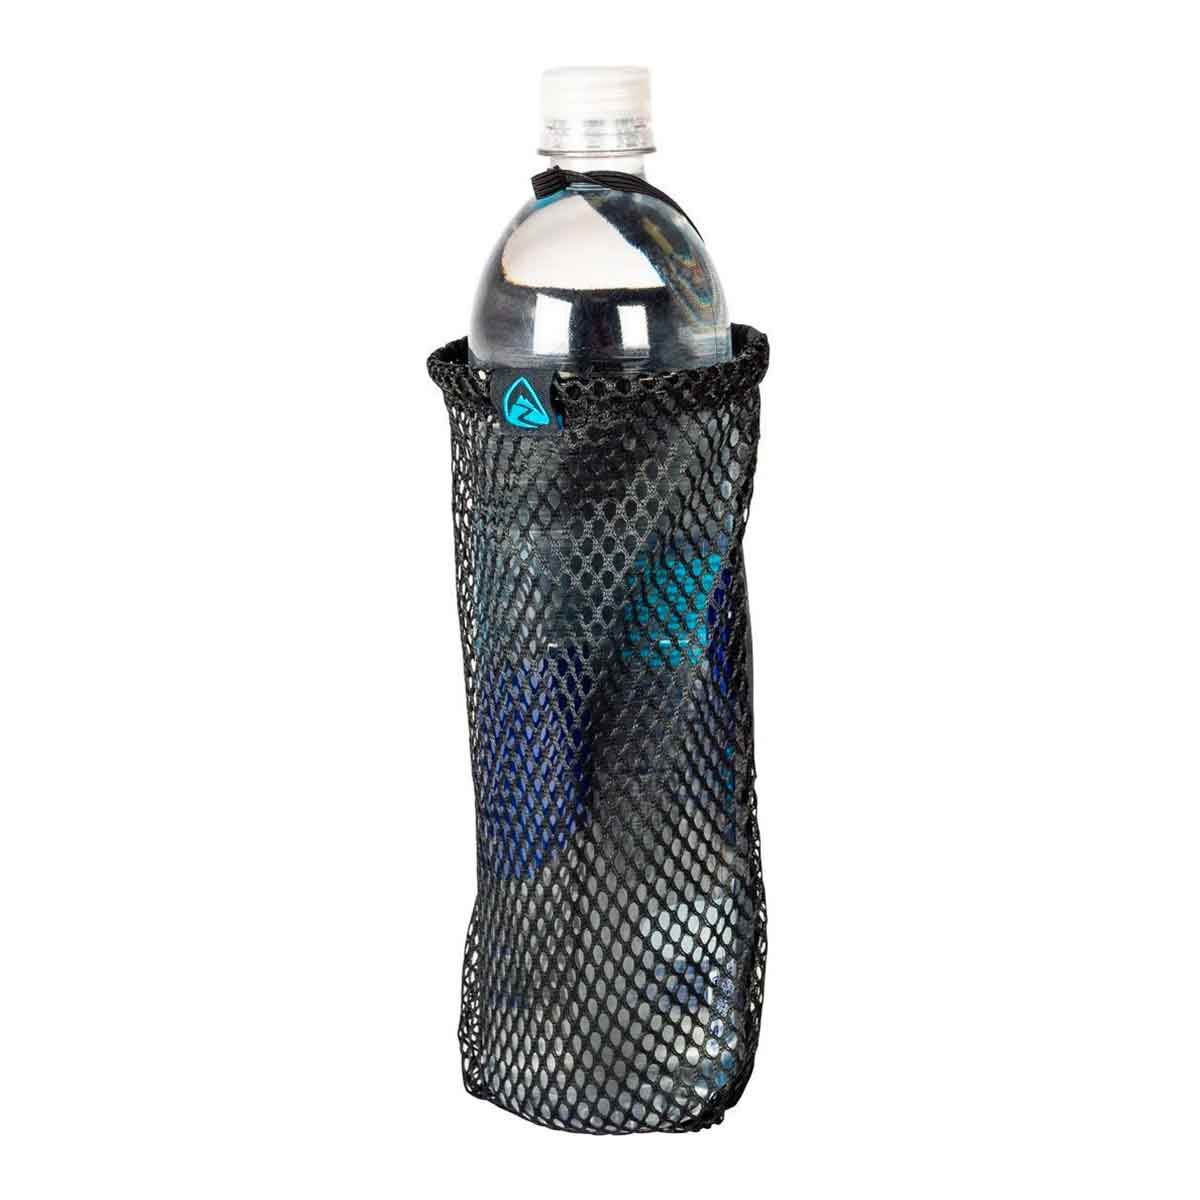 Zpacks water bottle sleeve